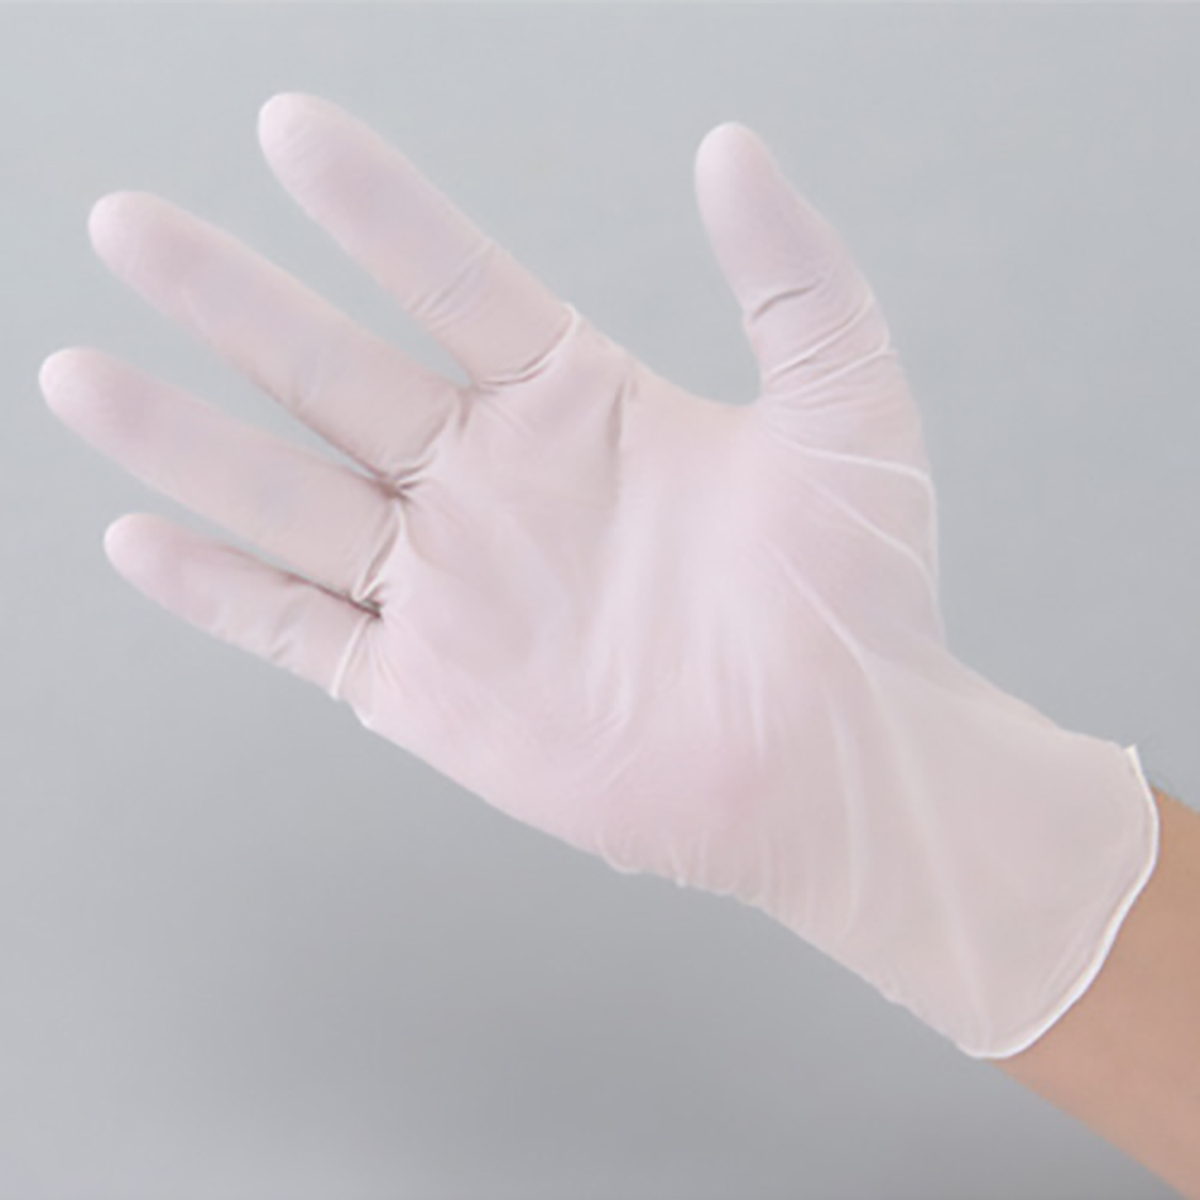 公式】パーマンショップ-ニトリルゴム手袋 粉なし M: 身体保護・安全 ...